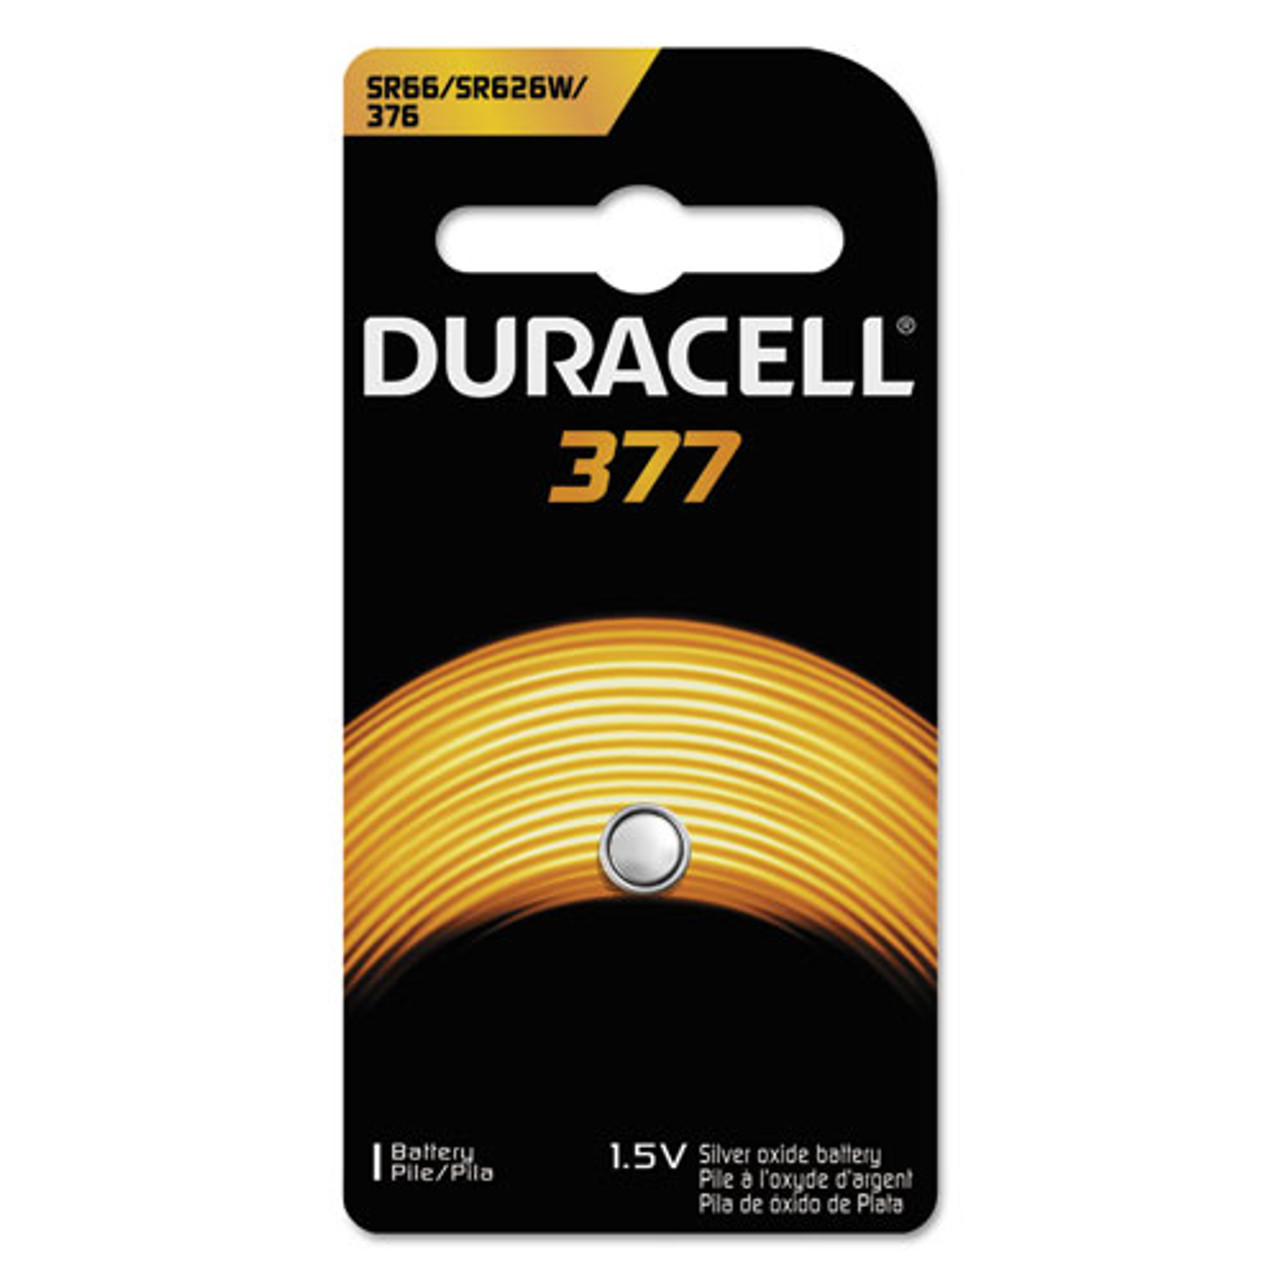 Duracell, Lithium Coin Batteries, 2032, 2/pack (DURDL2032B2PK)